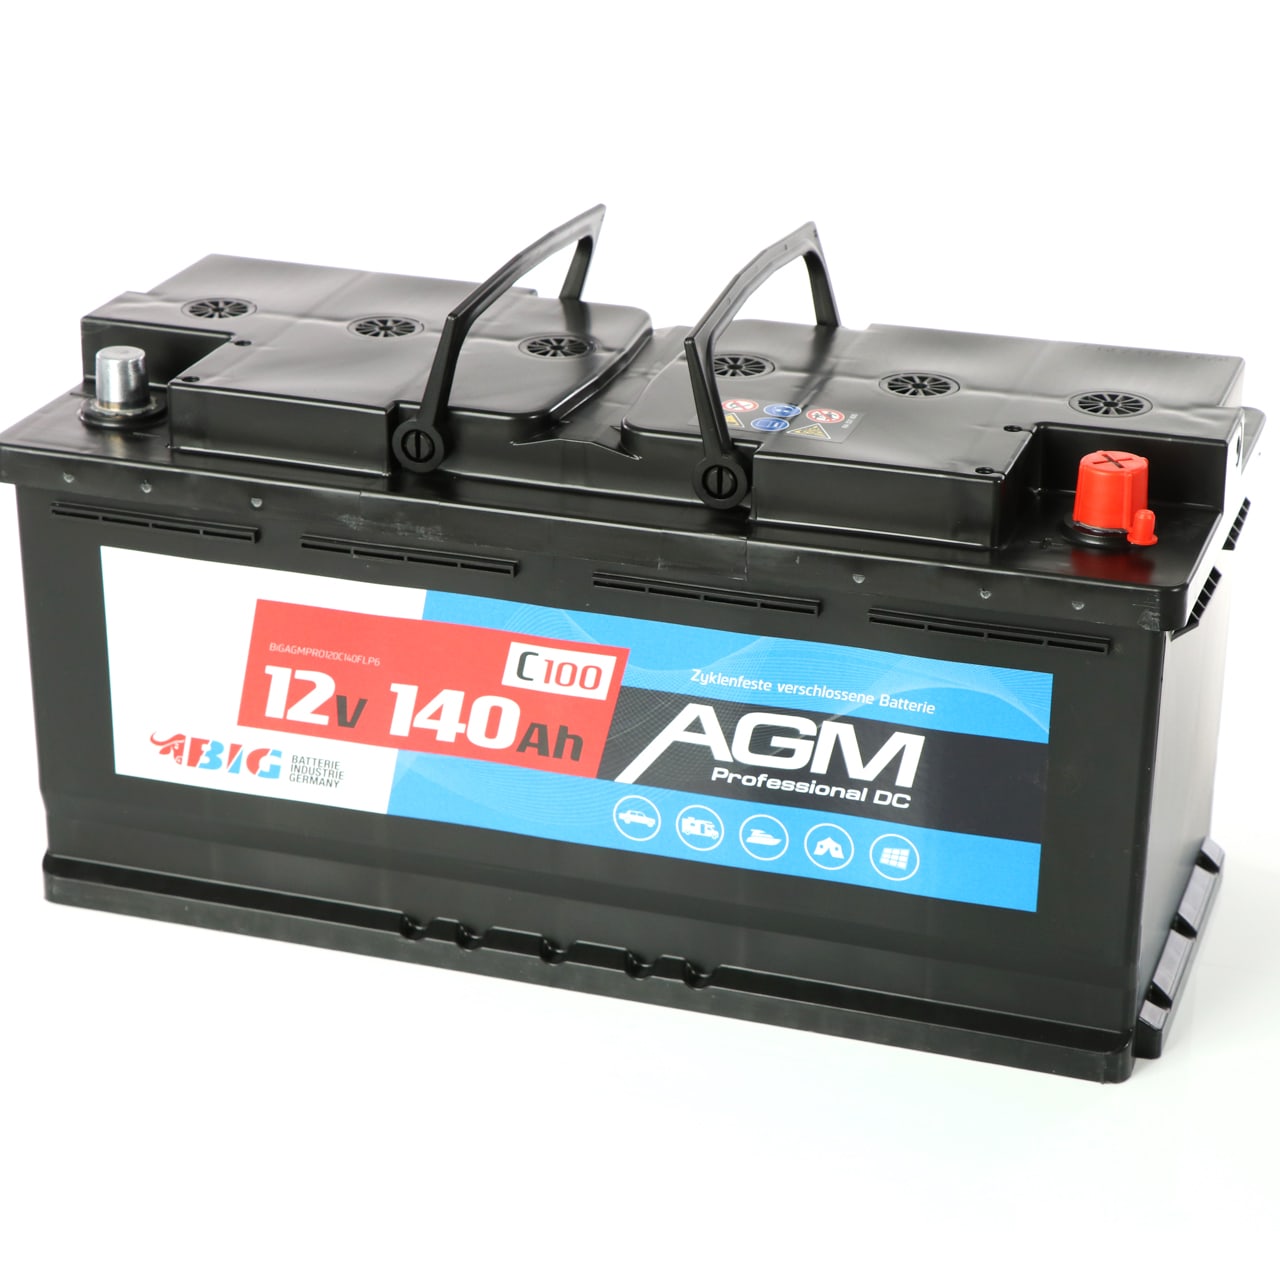 BIG Versorgungsbatterie AGM 12V 140Ah für Freizeit und Hobby